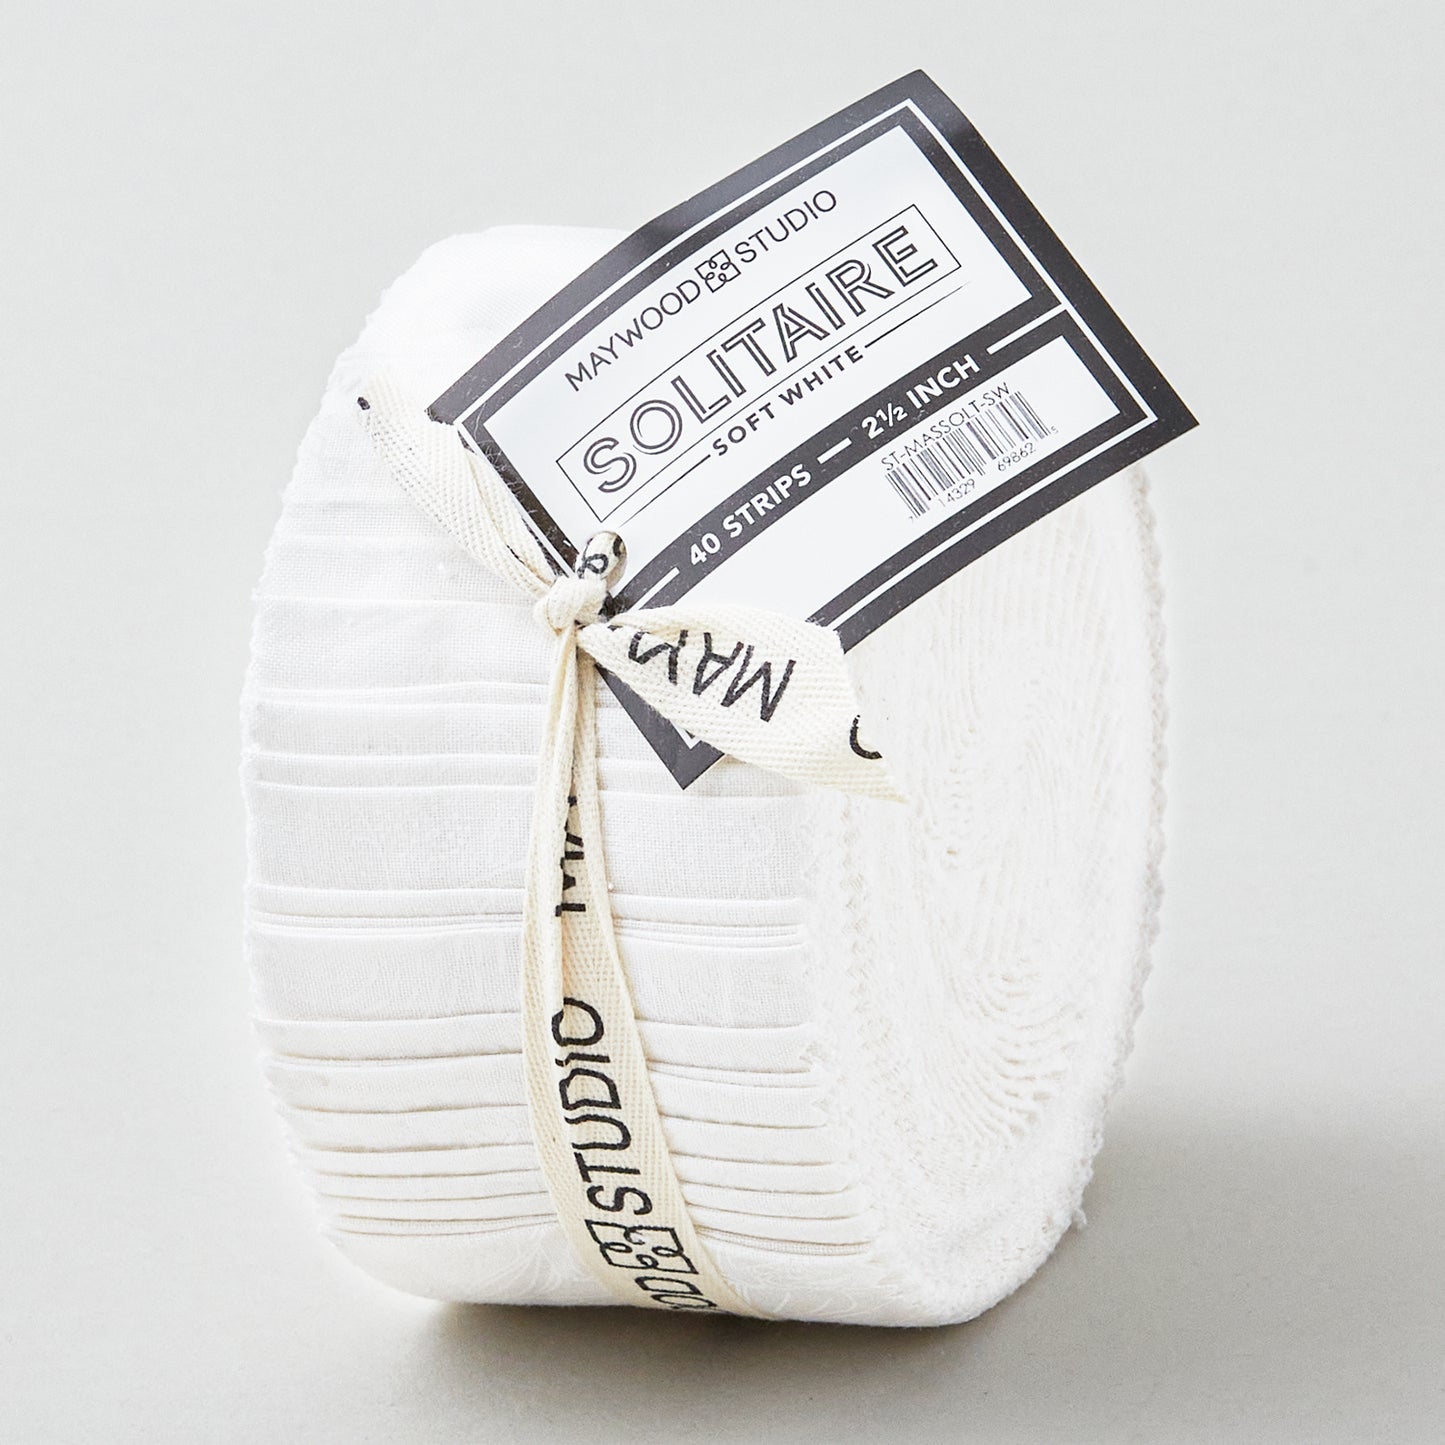 Solitaire Whites - Soft White 2 1/2" Strips Alternative View #1